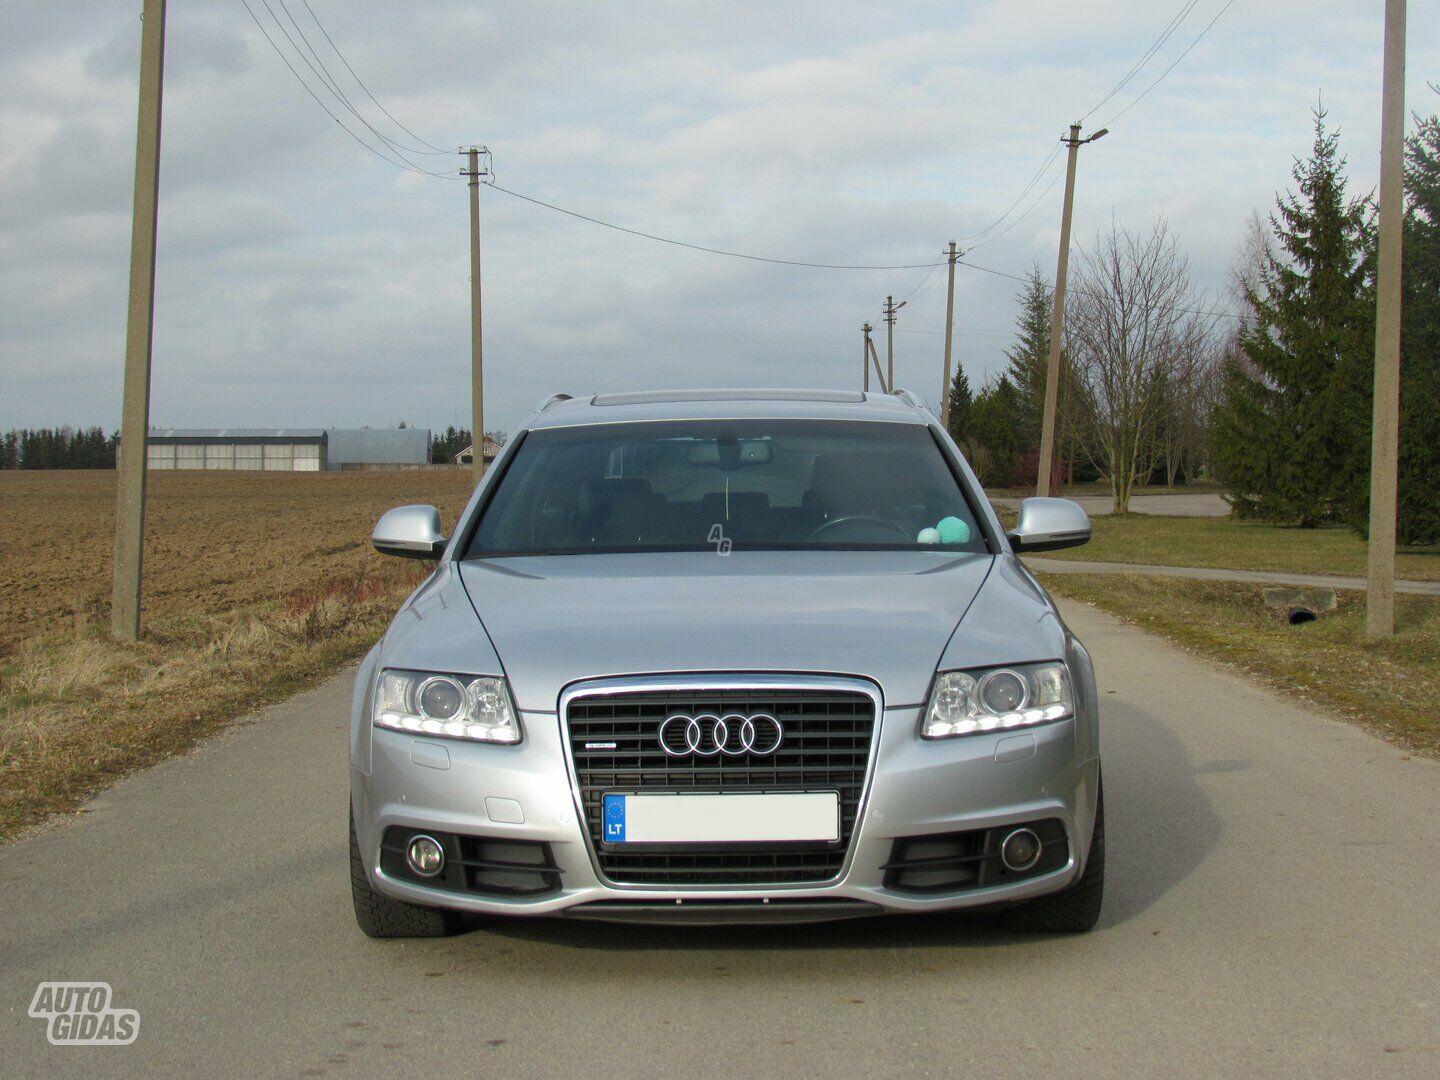 Audi A6 C6 TDI 2008 г